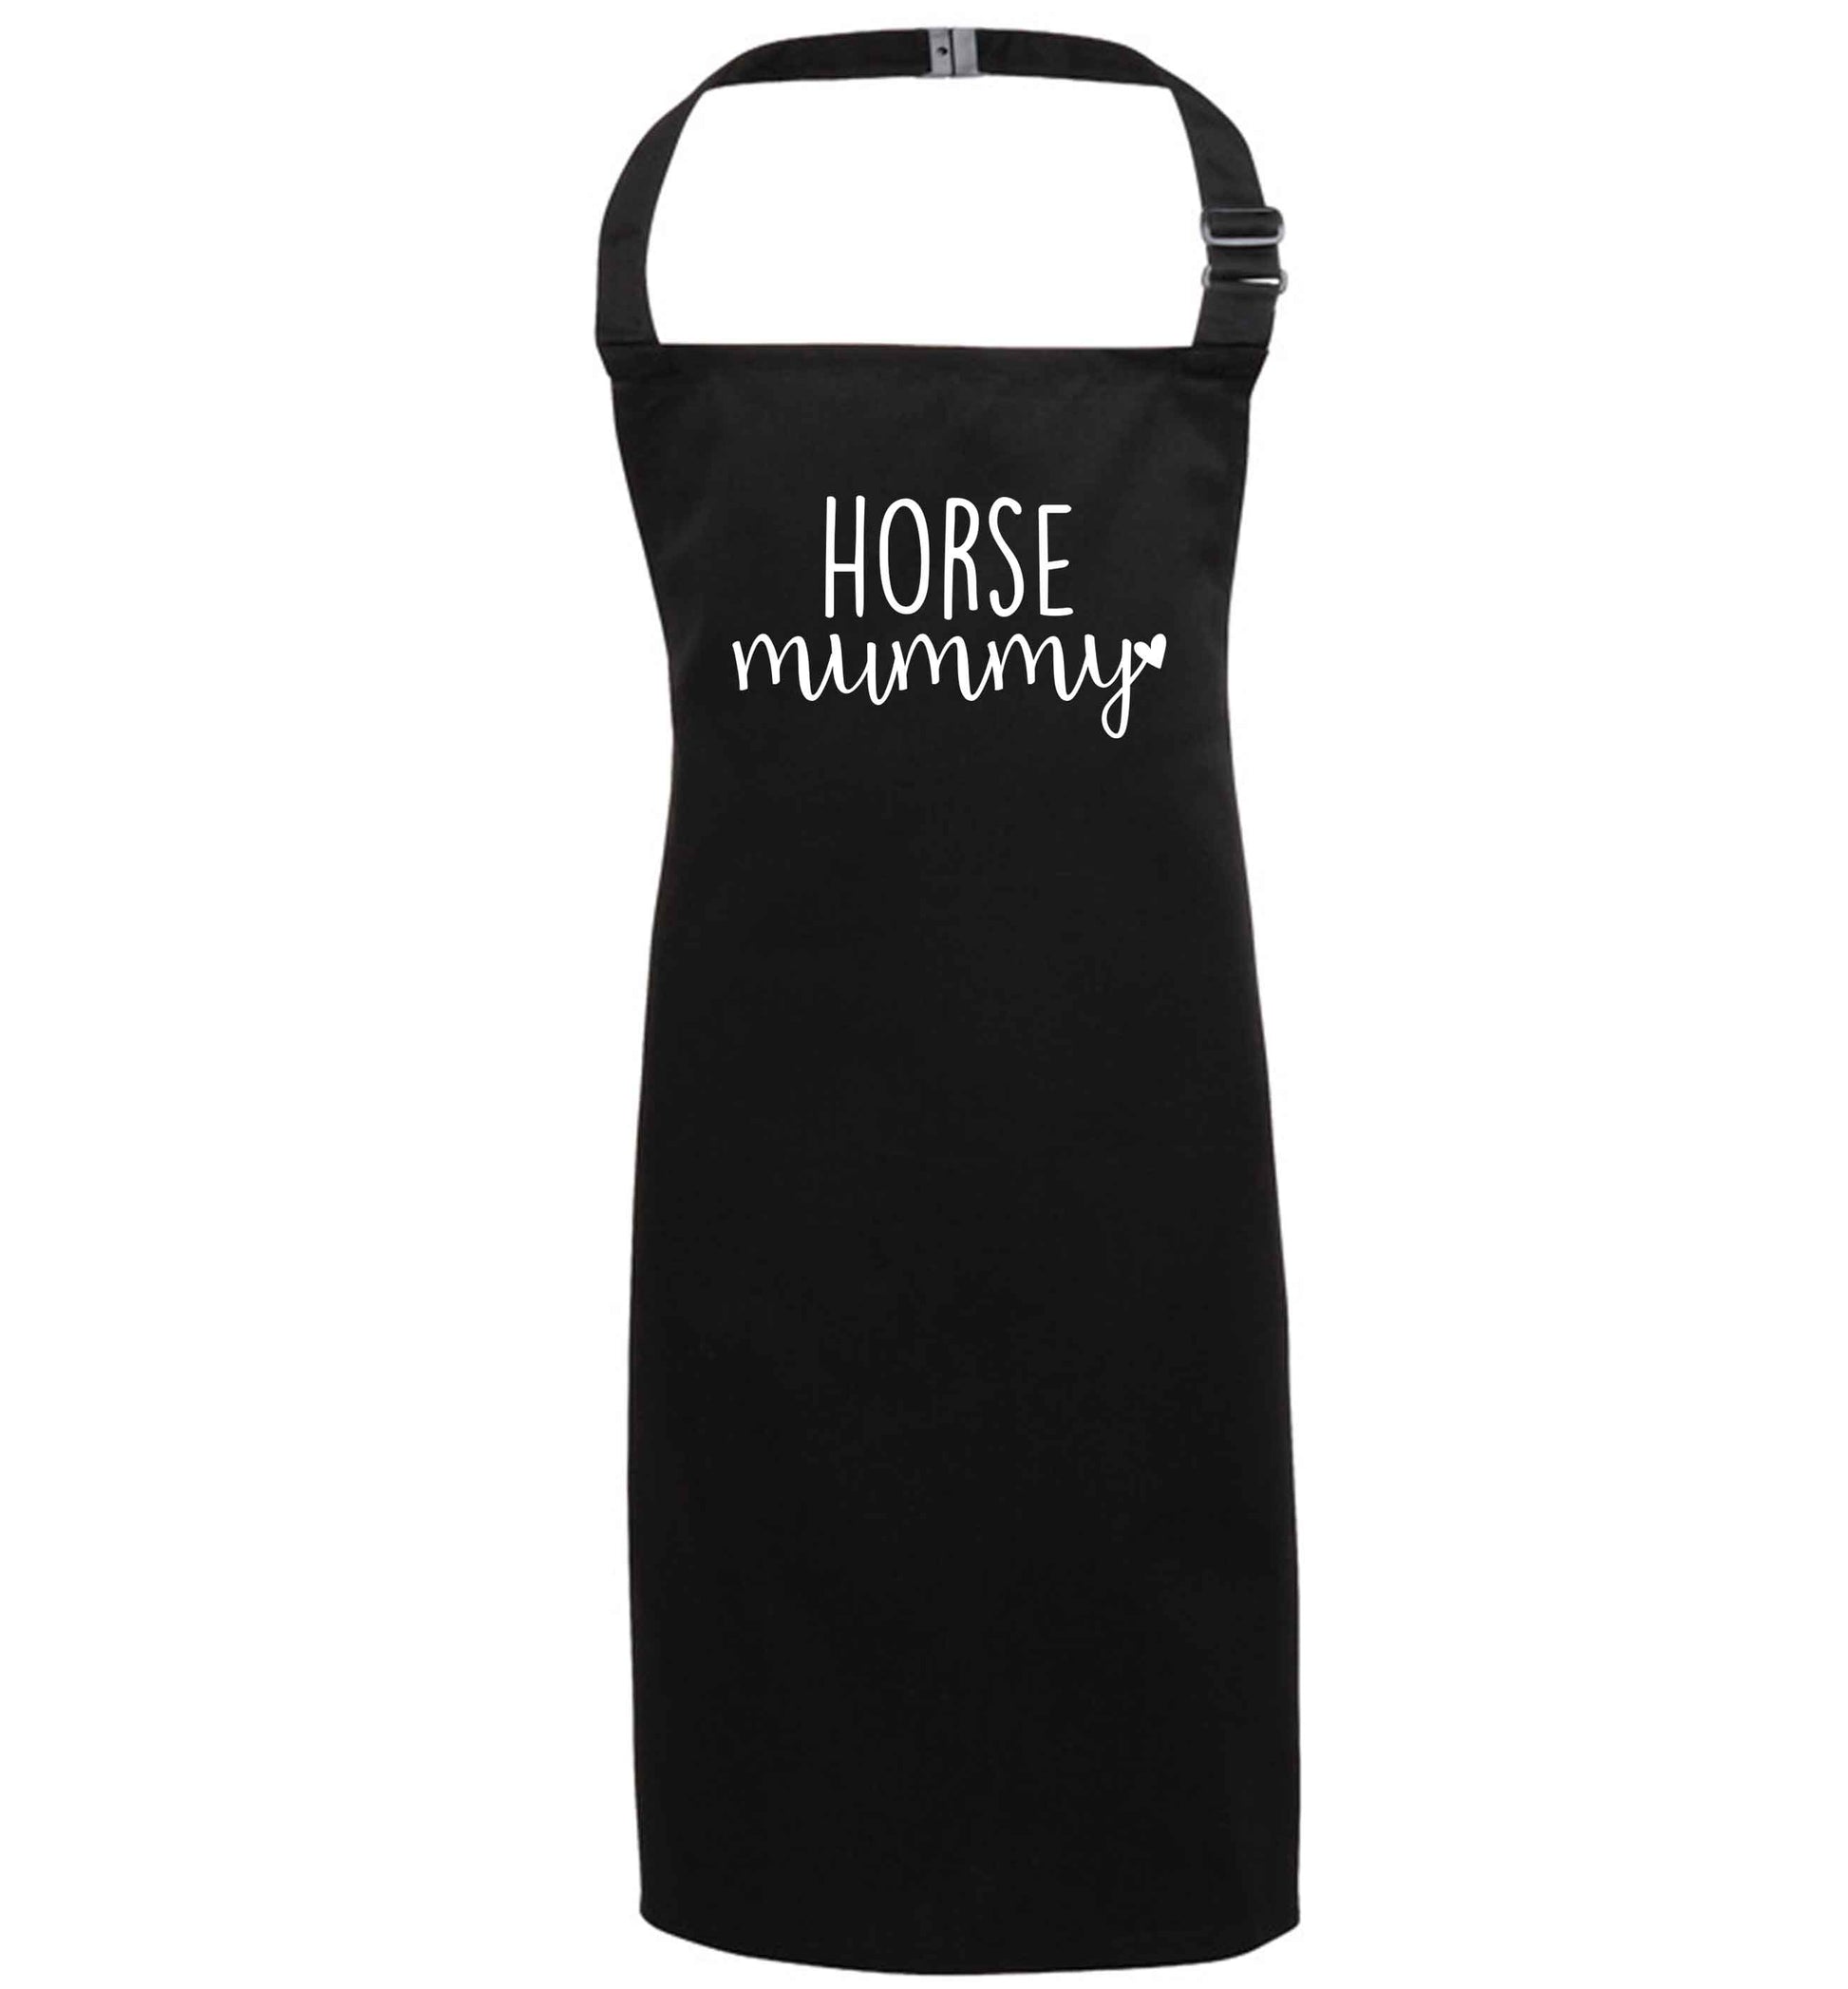 Horse mummy black apron 7-10 years